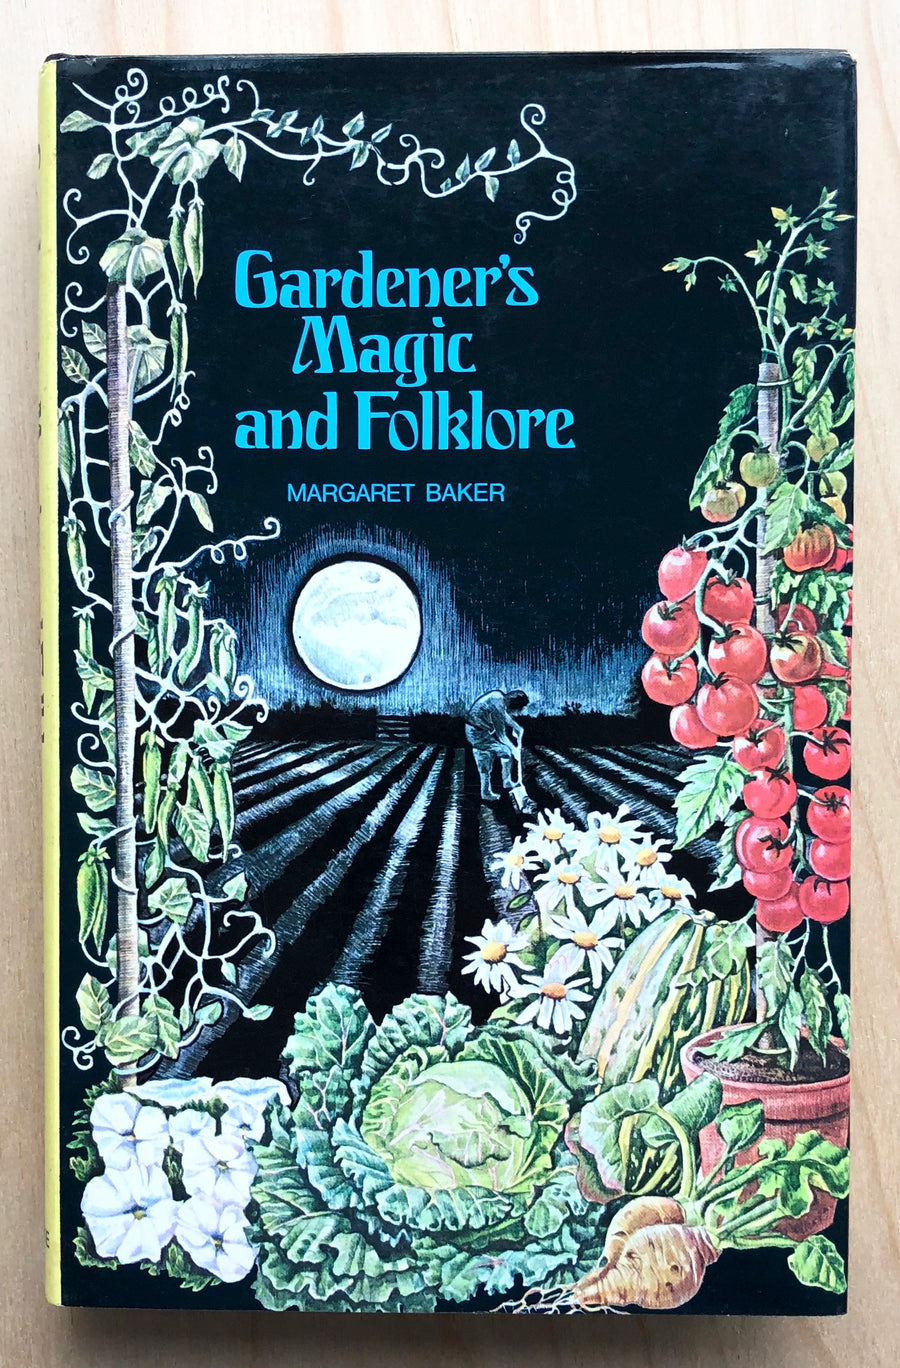 GARDENER'S MAGIC AND FOLKLORE by Margaret Baker